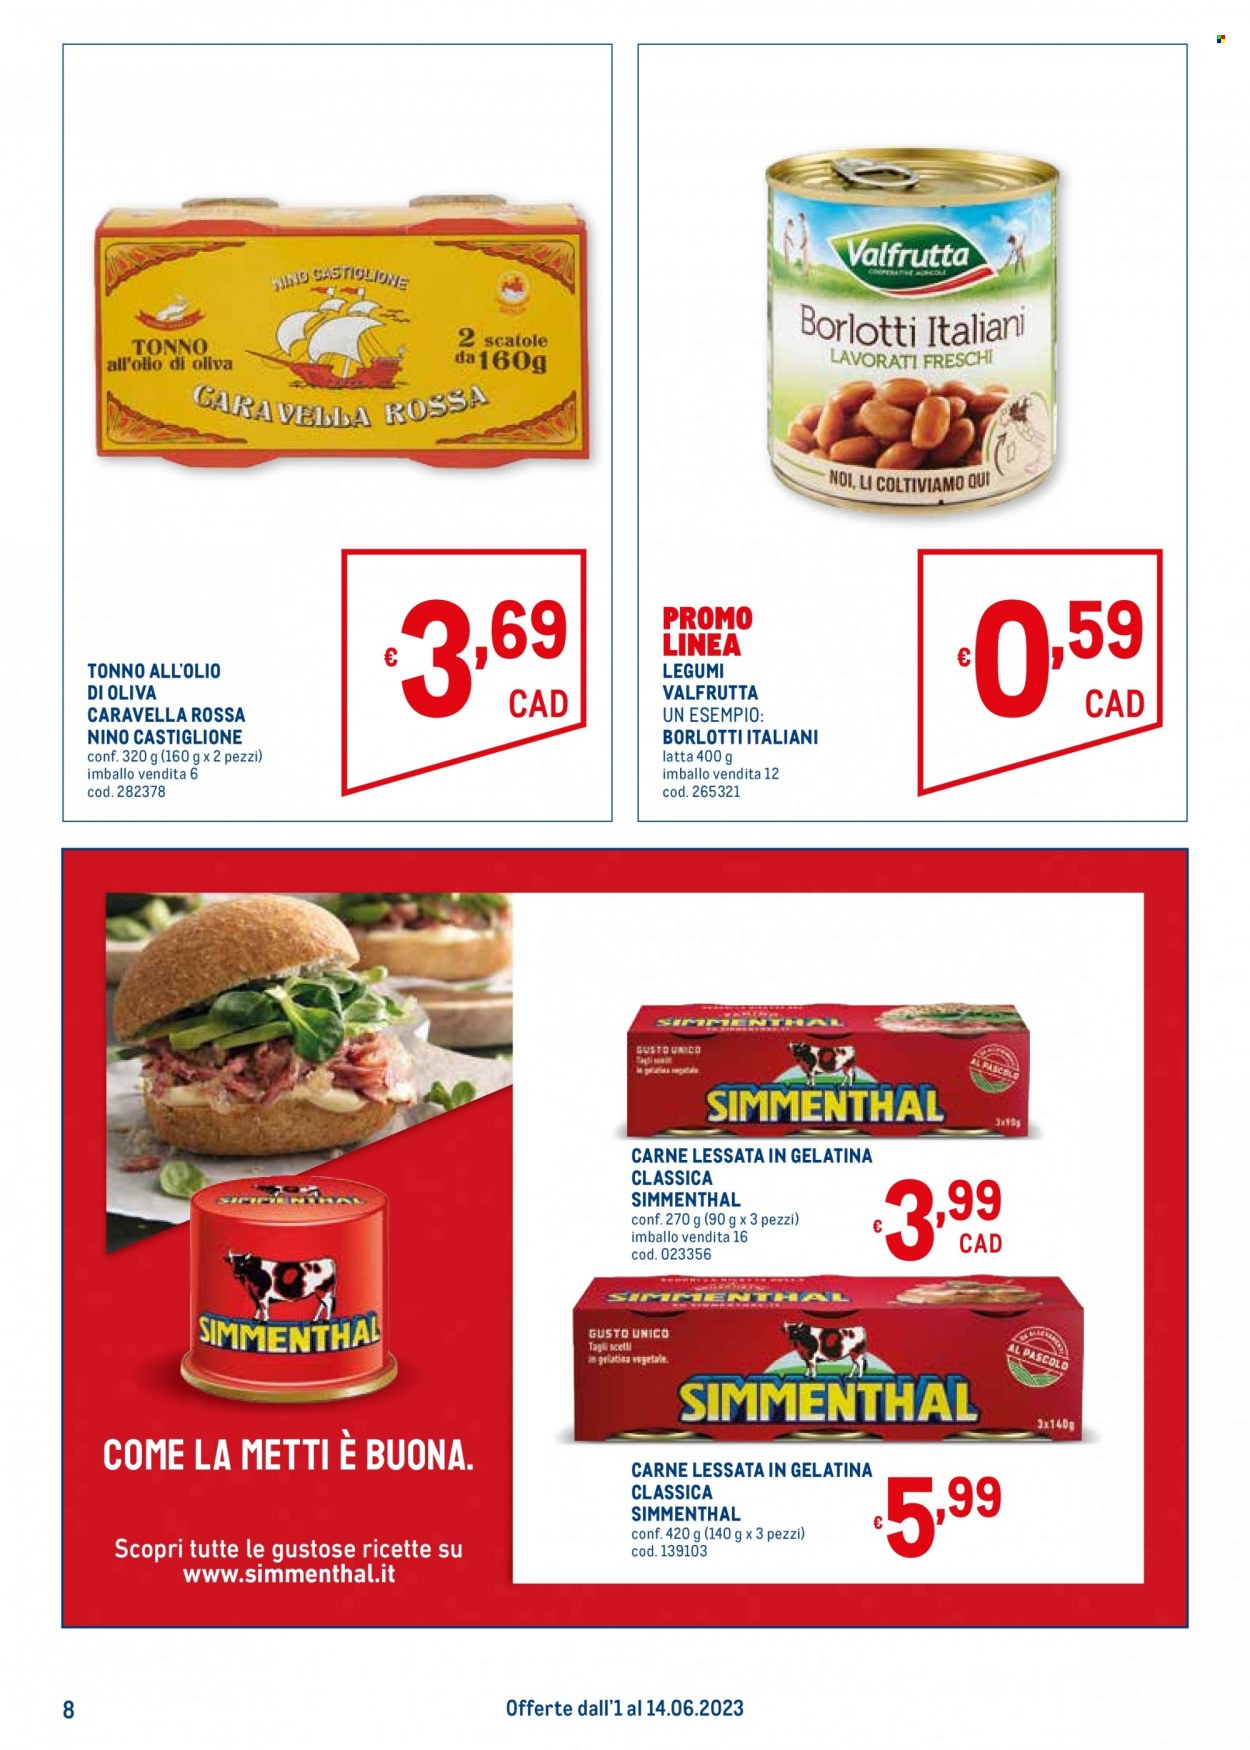 thumbnail - Volantino Metro - 1/6/2023 - 14/6/2023 - Prodotti in offerta - tonno, Simmenthal, fagioli borlotti, Valfrutta, tonno sott'olio, carne in scatola. Pagina 8.